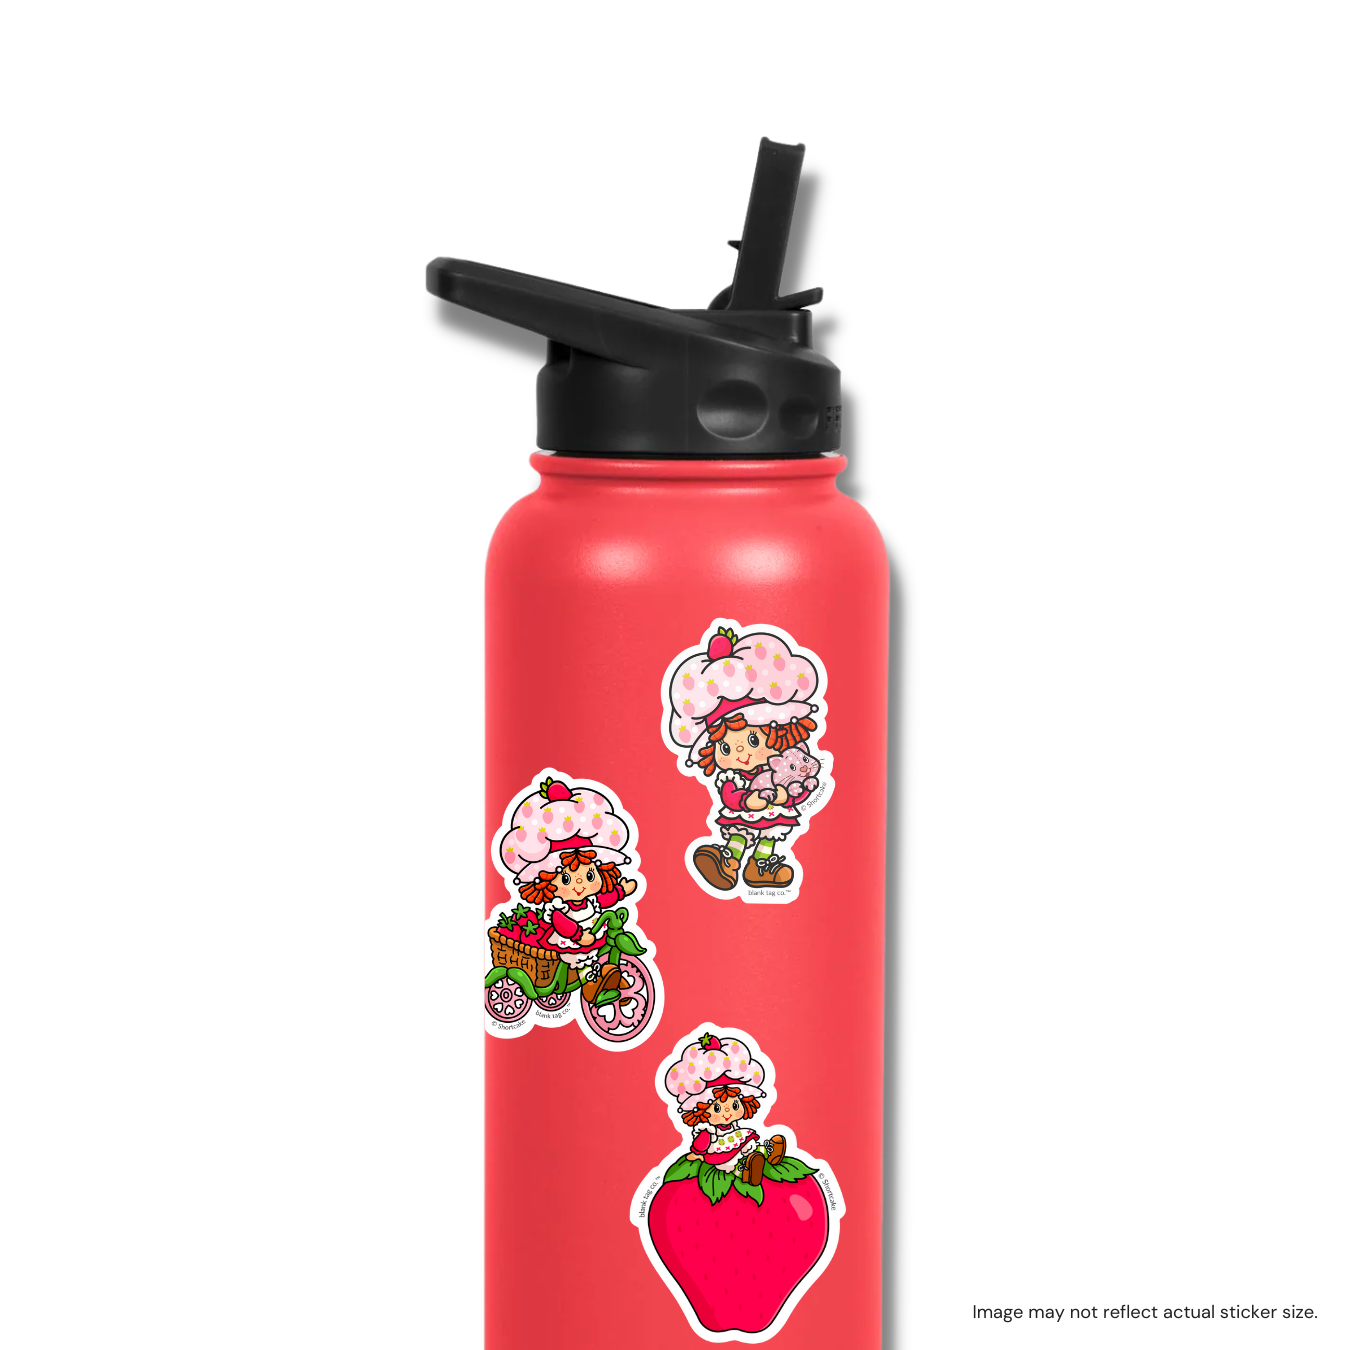 The Strawberry Shortcake Logo Sticker